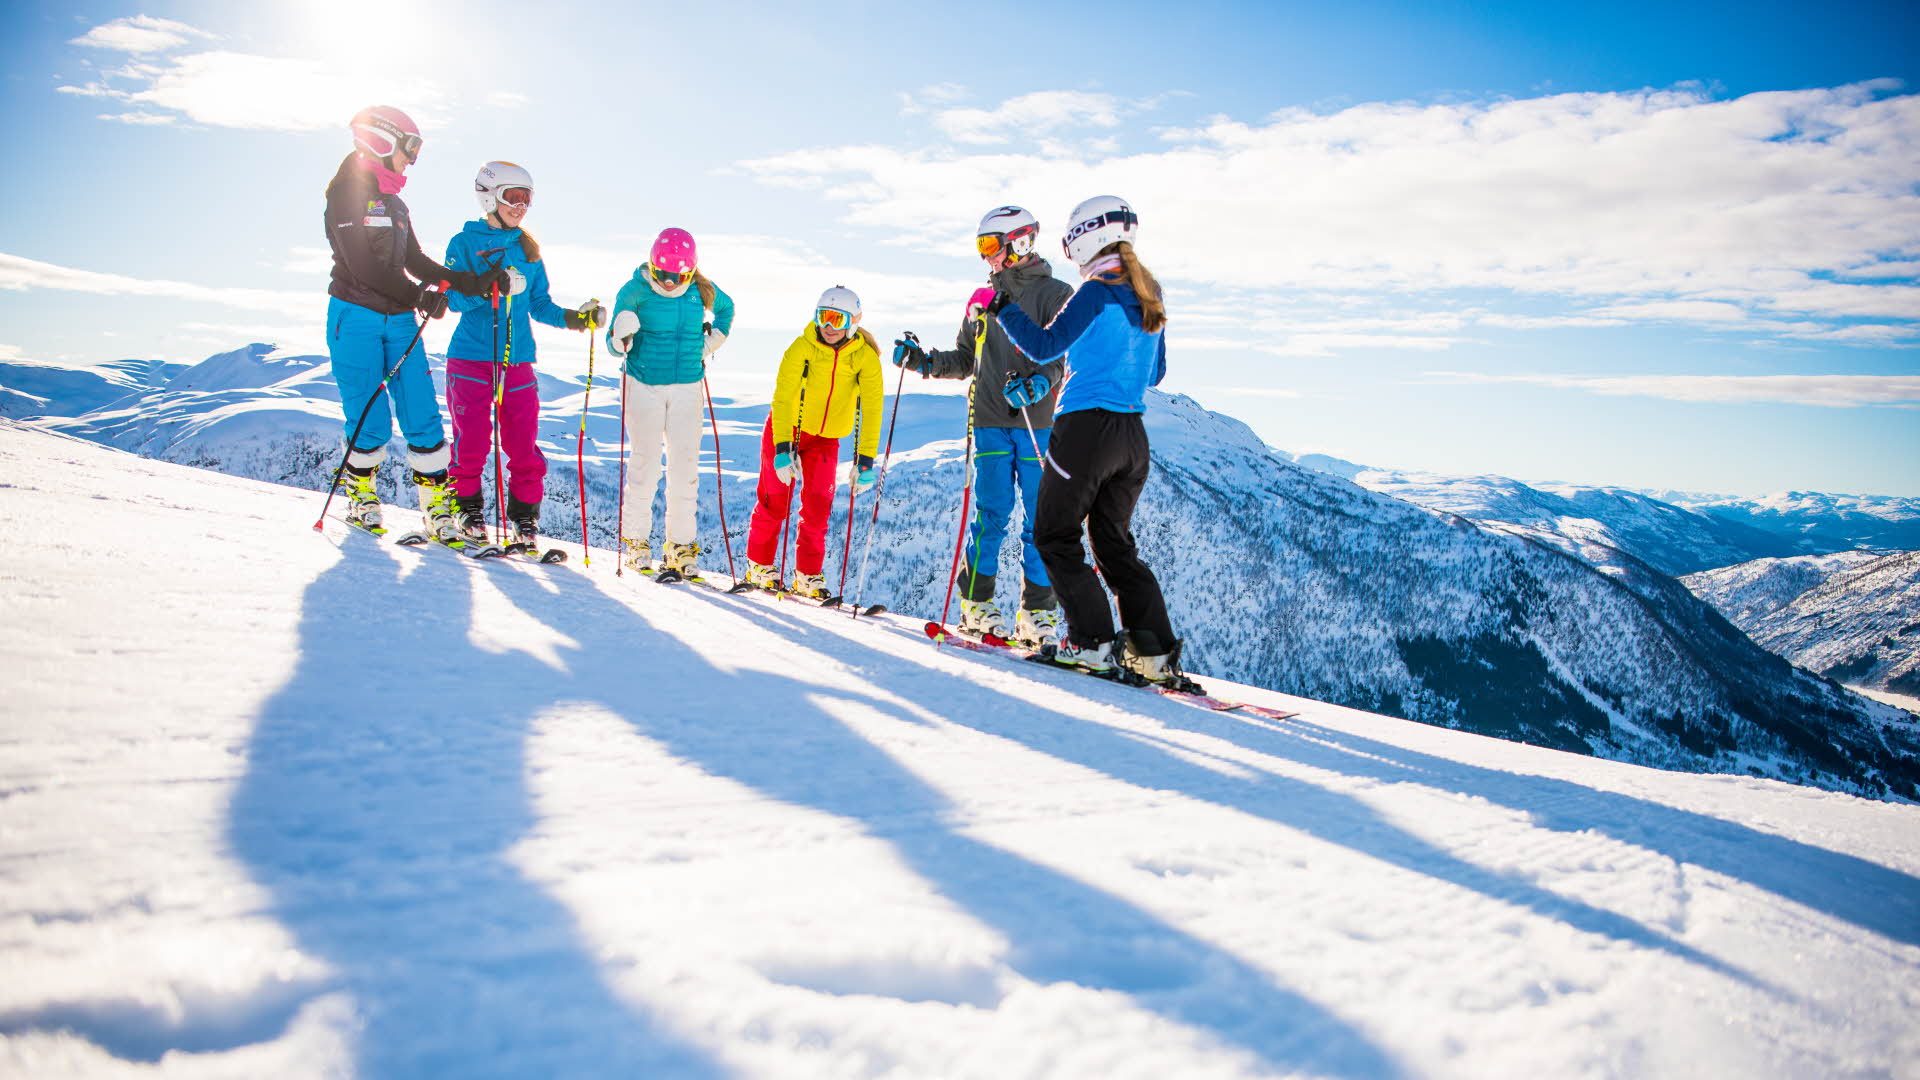 Surplombant le paysage hivernal, 6 personnes en tenue de ski alpin se tiennent debout sur les pistes de la station de ski de Myrkdalen par une journée ensoleillée.